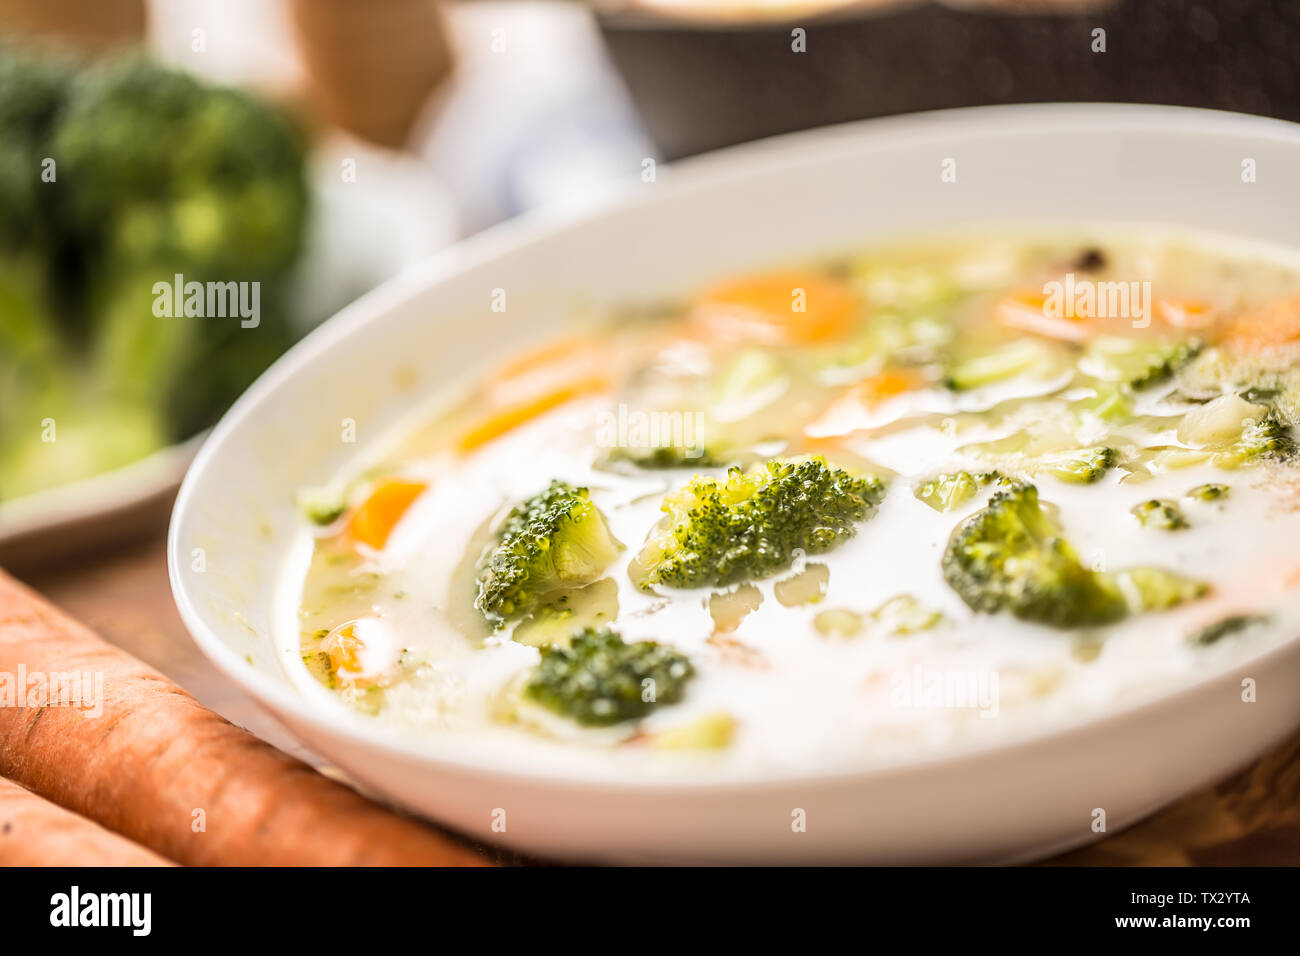 Soupe de légumes de brocoli oignon et d'autres ingrédients. Les aliments et les repas végétariens sains Banque D'Images